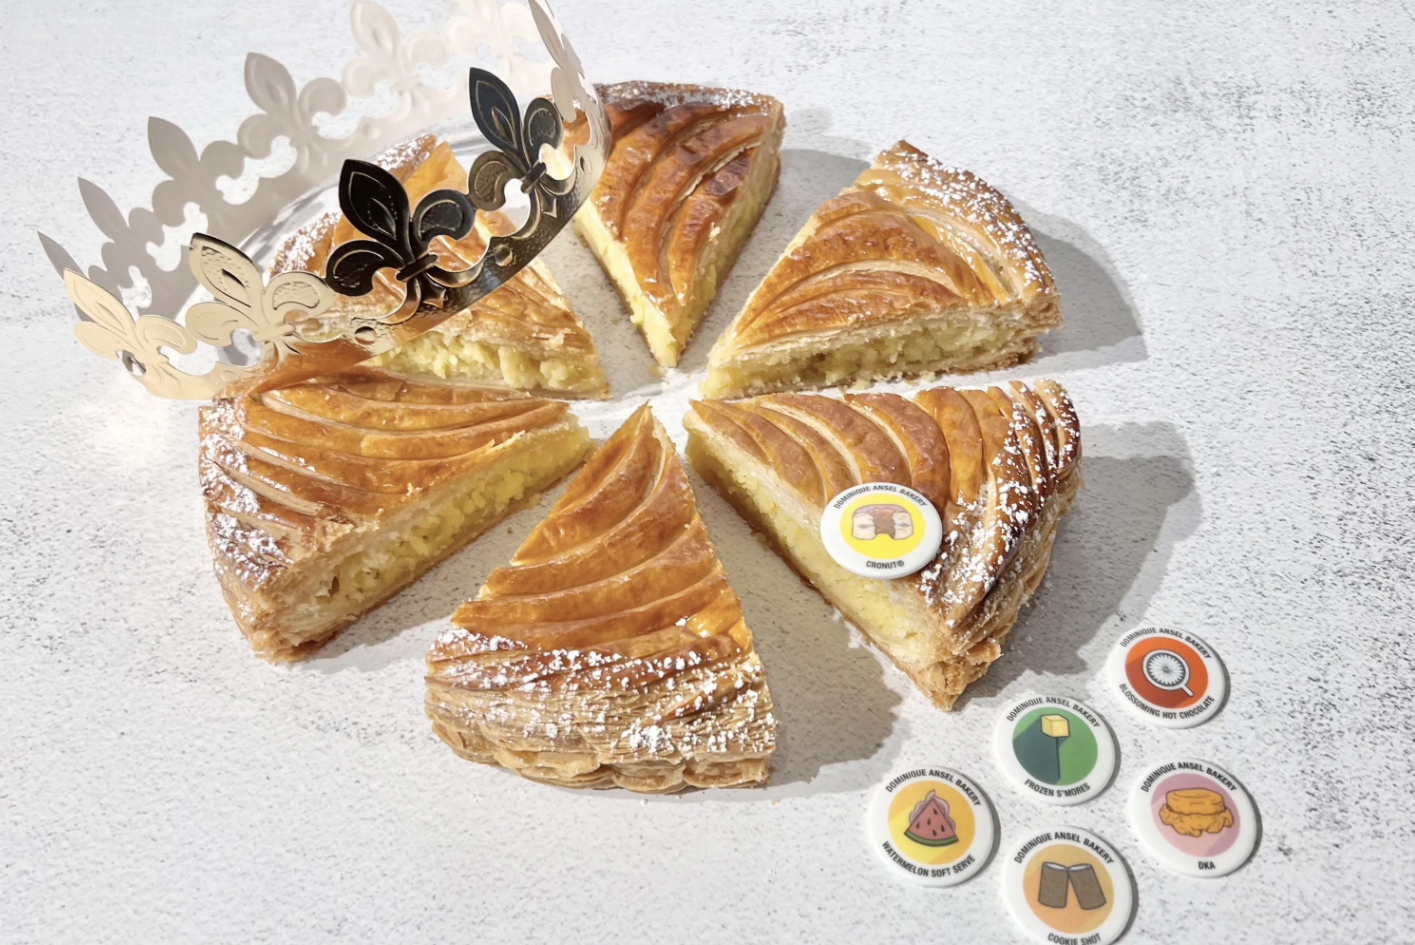 Cette boulangerie française commercialise des galettes des rois